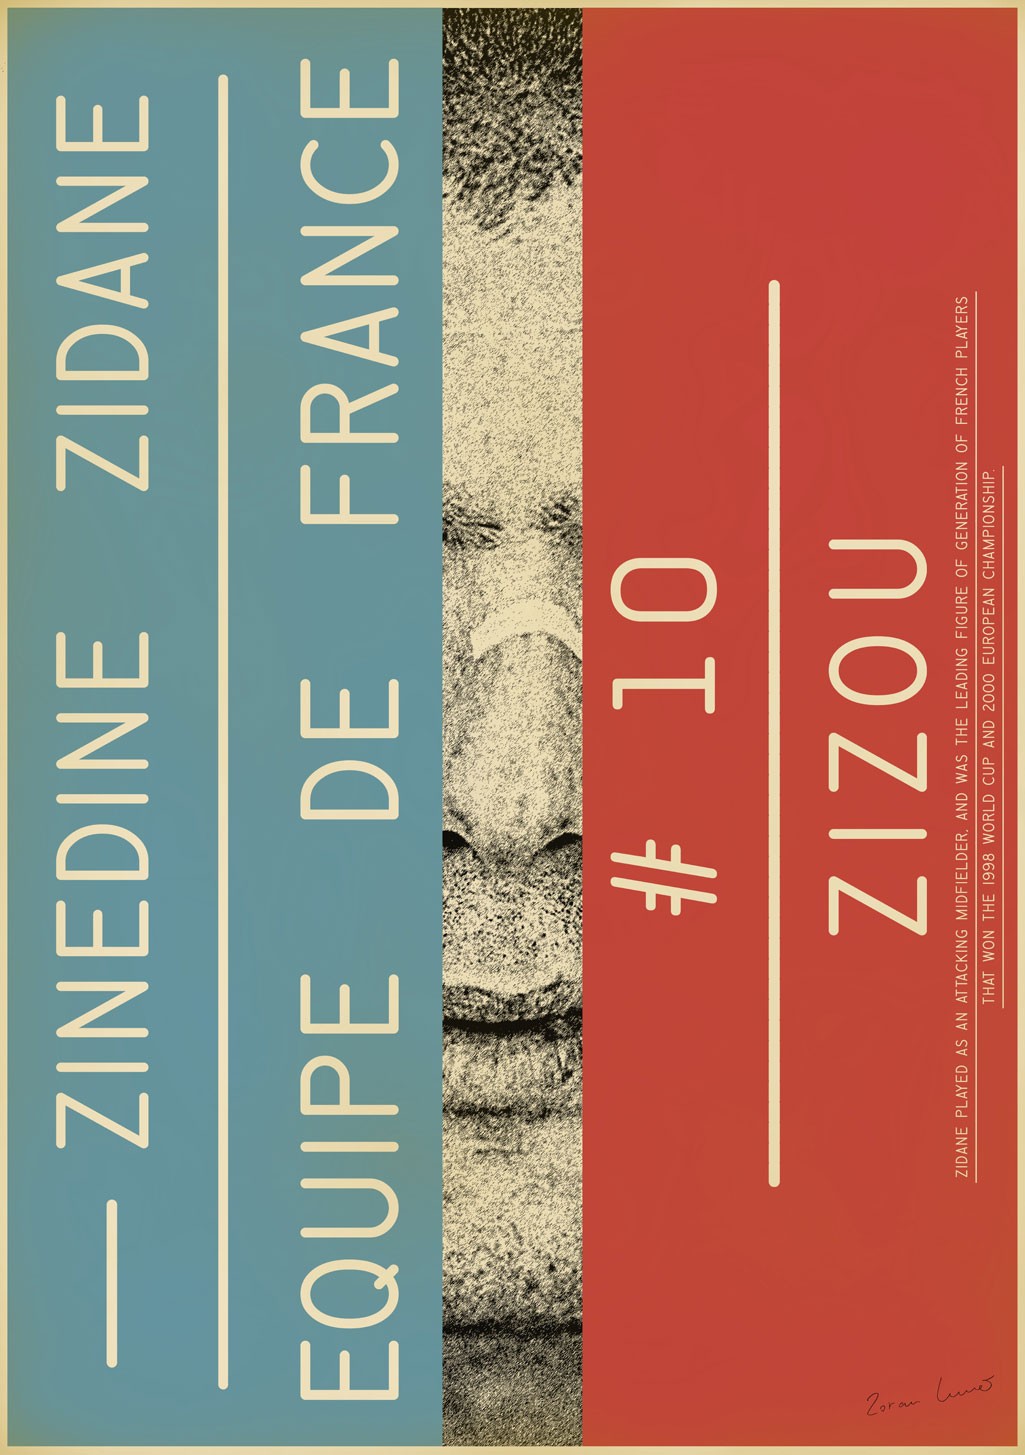 affiche-football-zoran-lucic-zidane-zizou-1